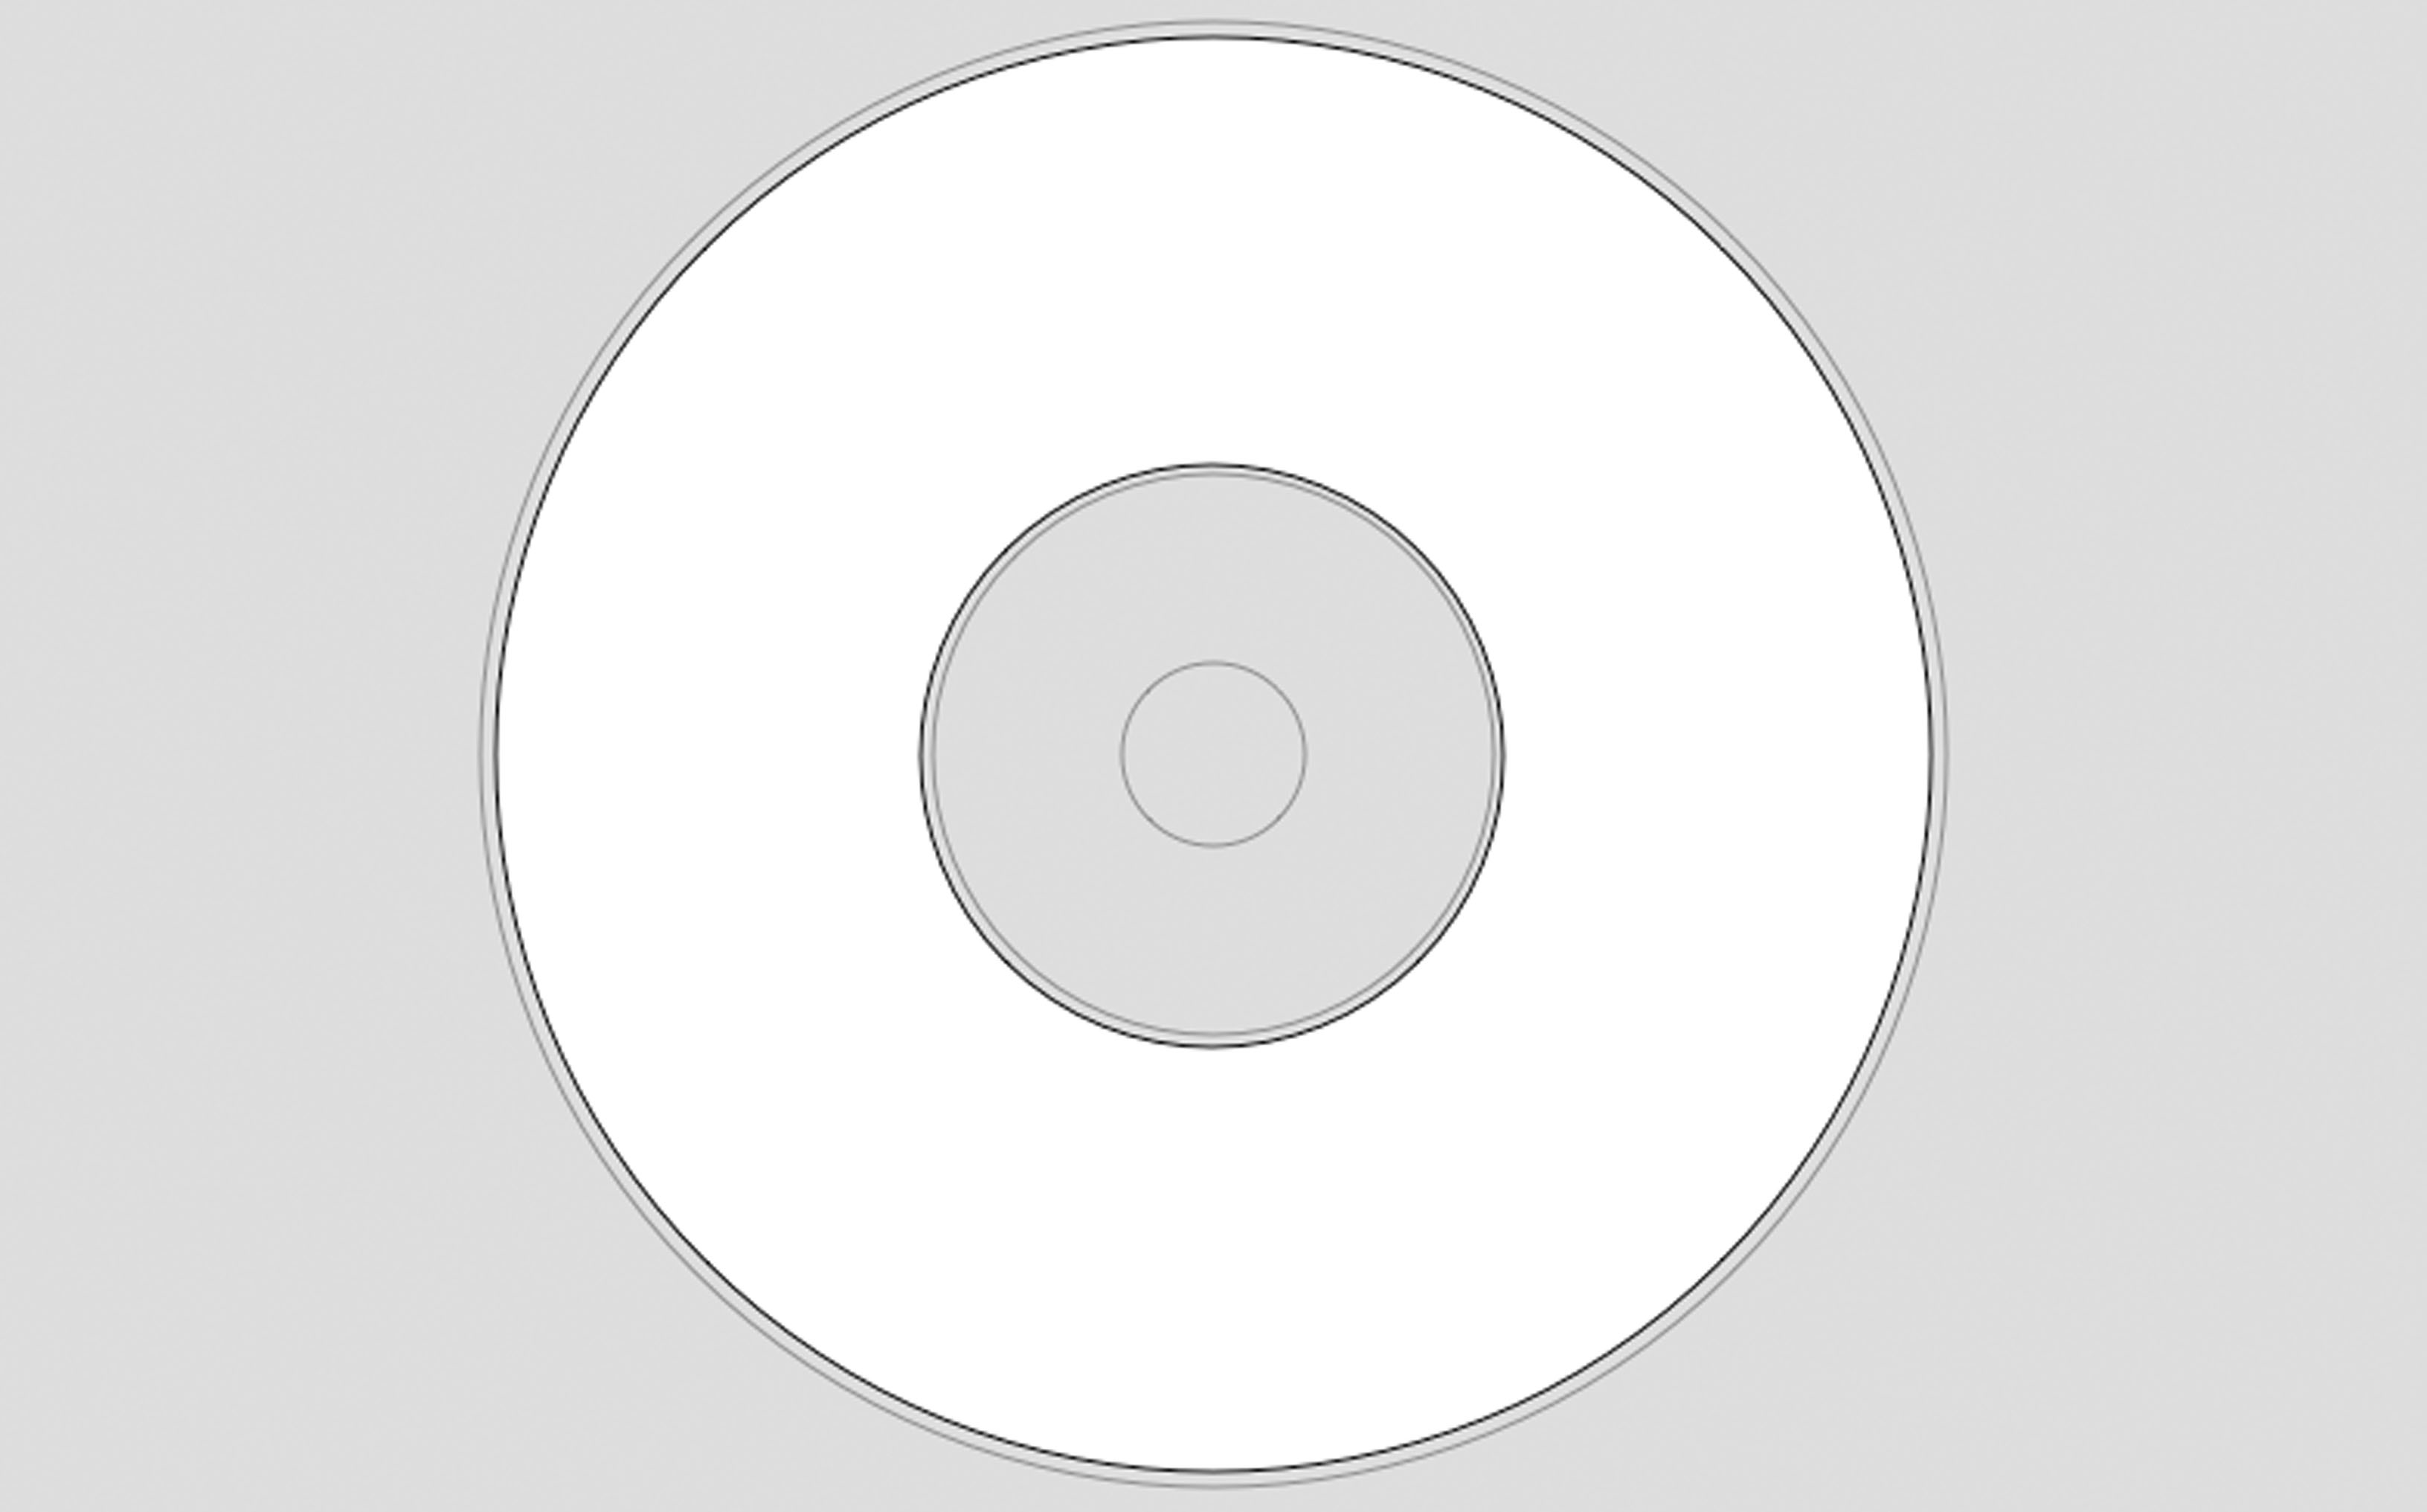 disketch cd label software crack serial keygen